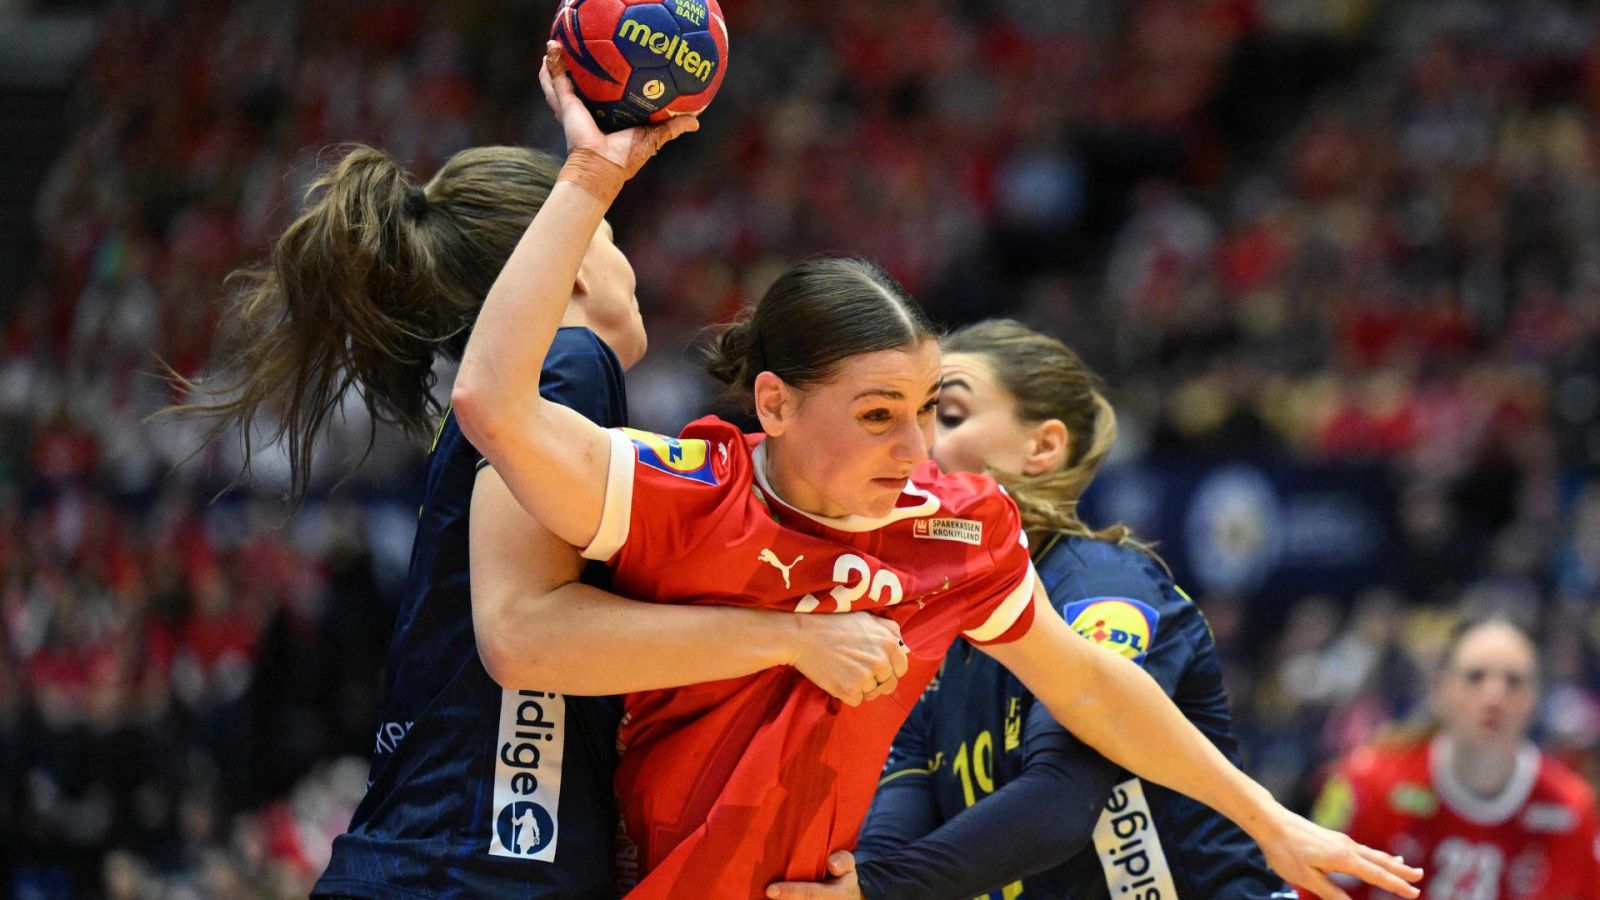 Balonmano - Campeonato del Mundo Femenino. Partido por el 3er puesto: Dinamarca - Suecia